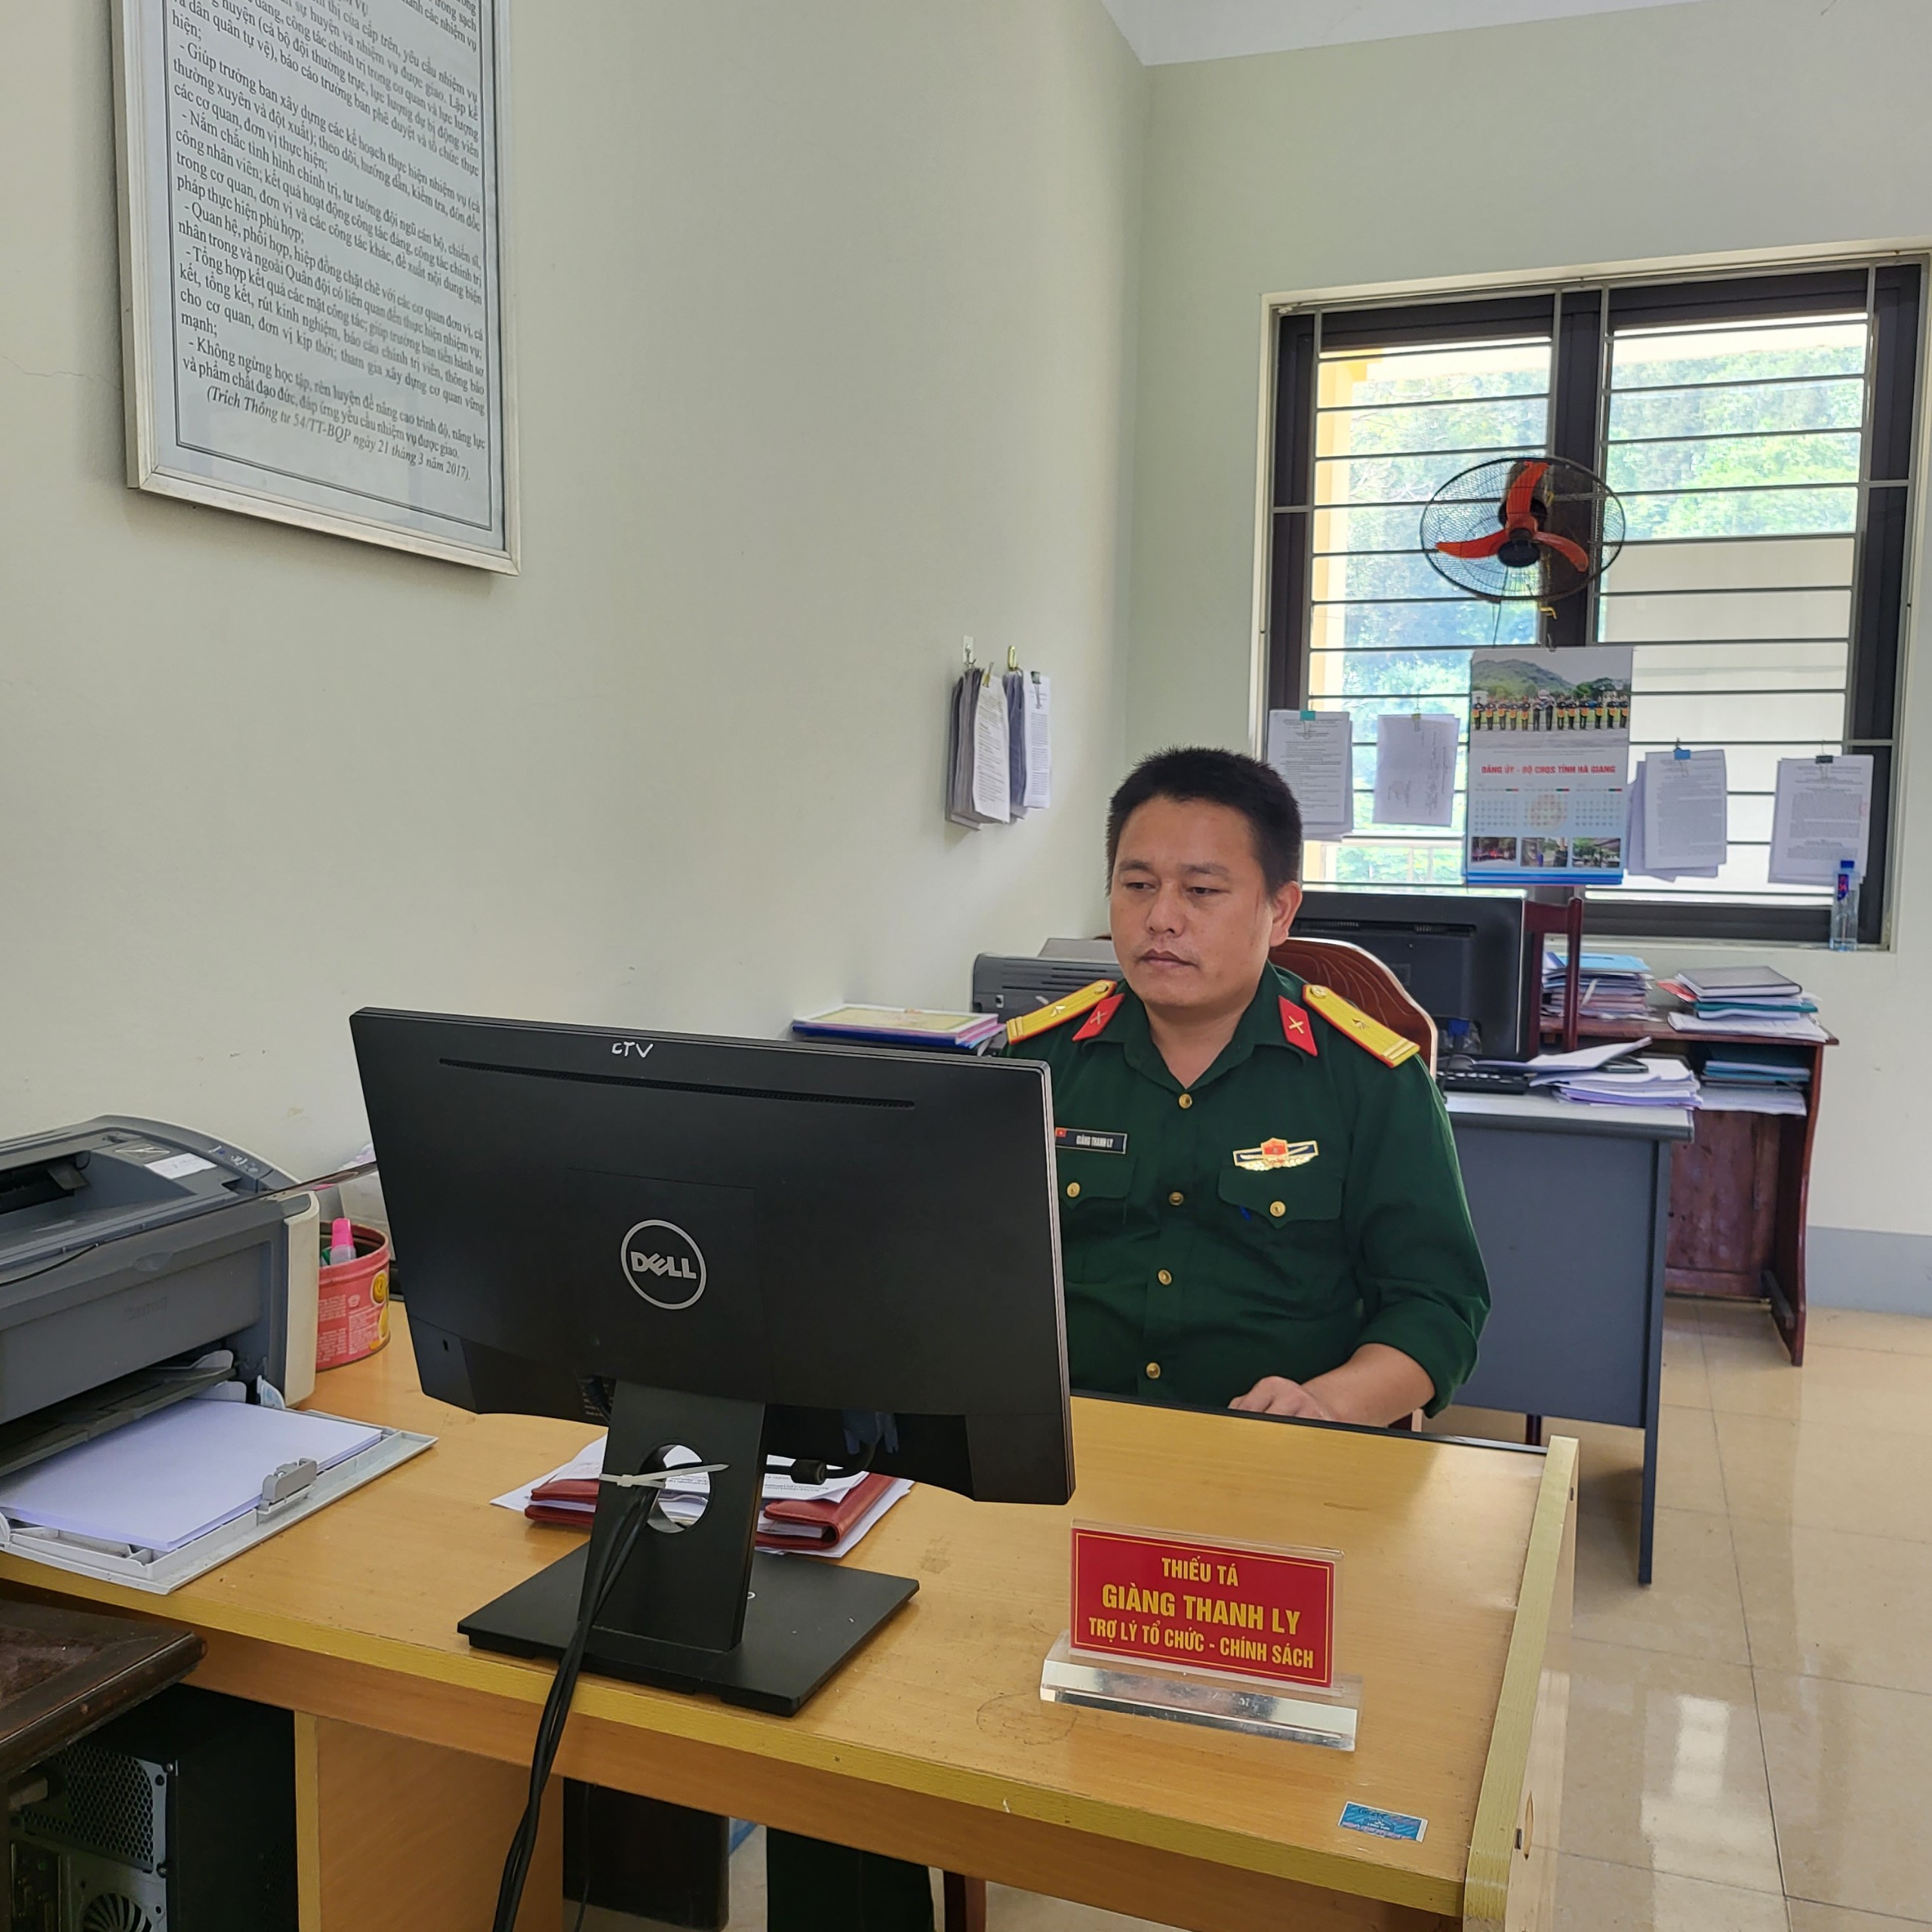 Thiếu tá Giàng Thanh Ly - Một tấm gương tiêu biểu học tập và làm theo Bác